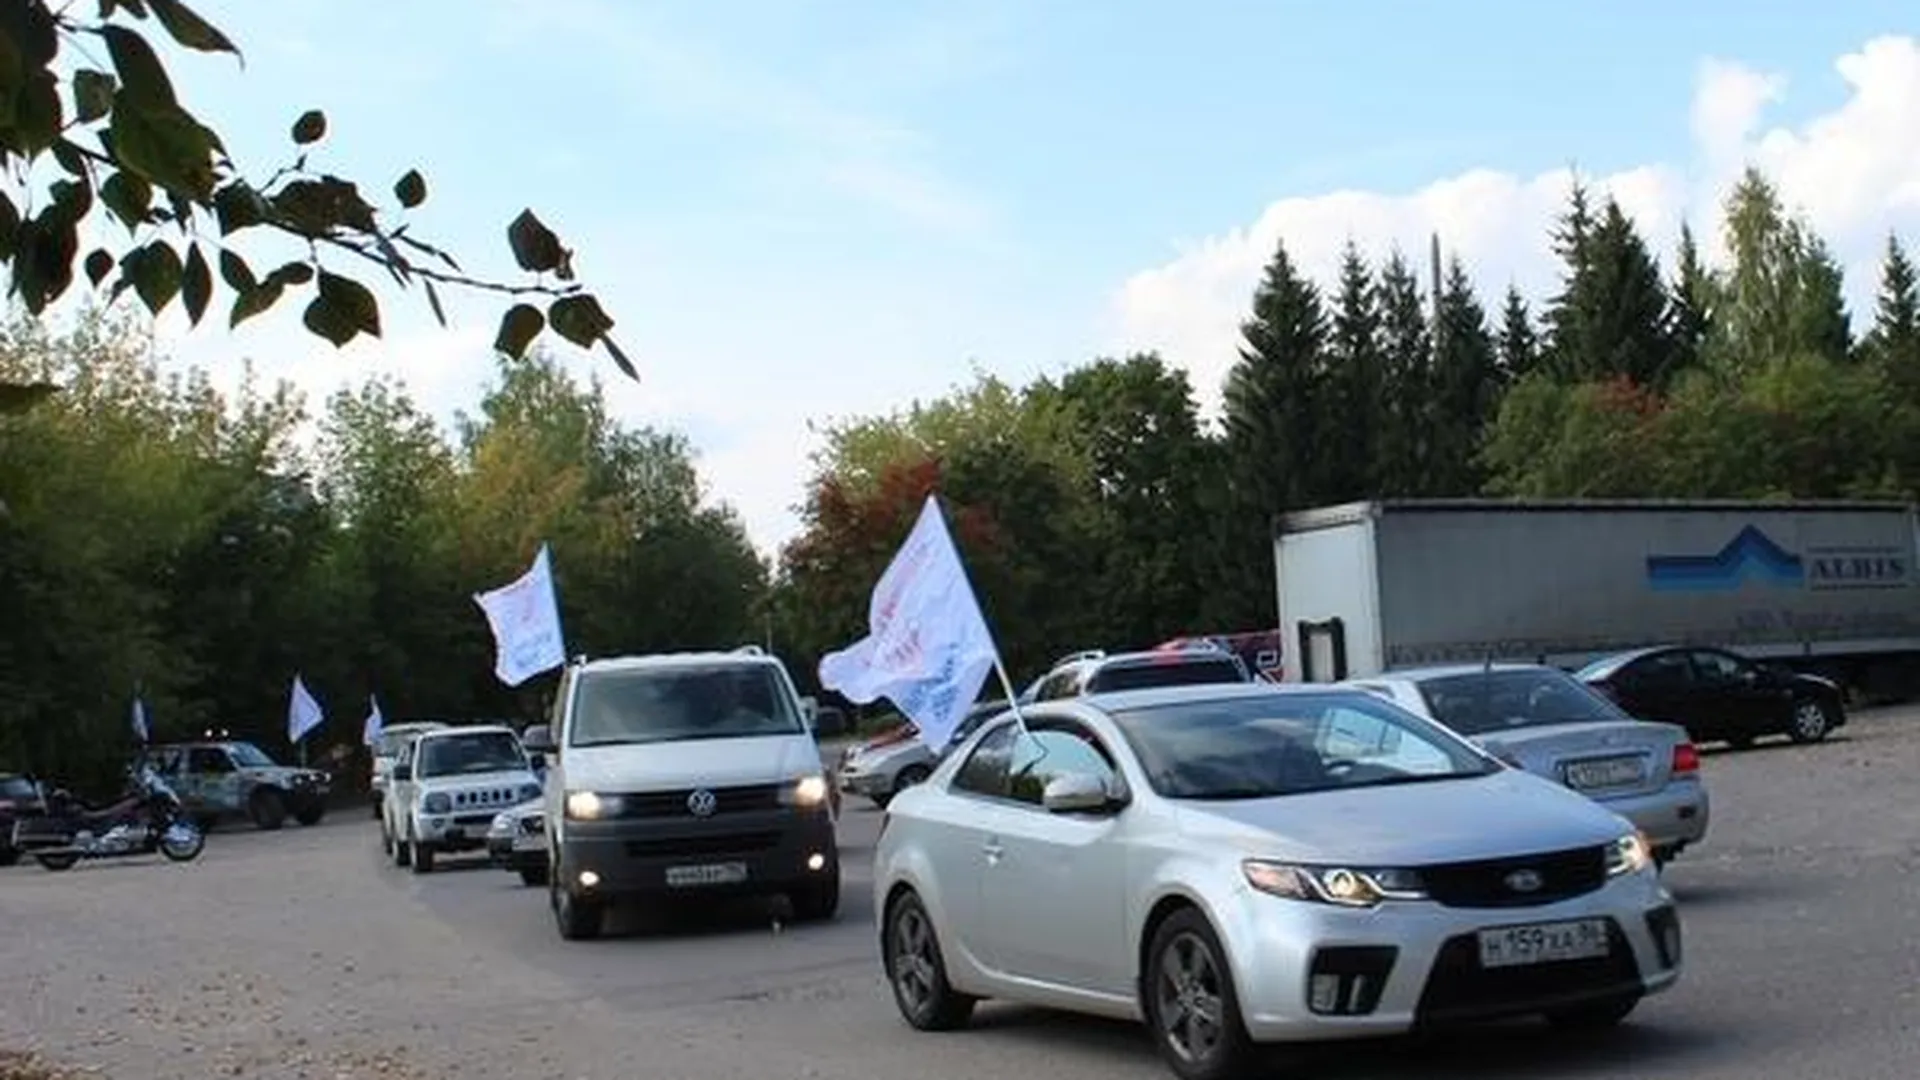 Автопробег «Голосуй за будущее!» стартовал в Коломенском районе